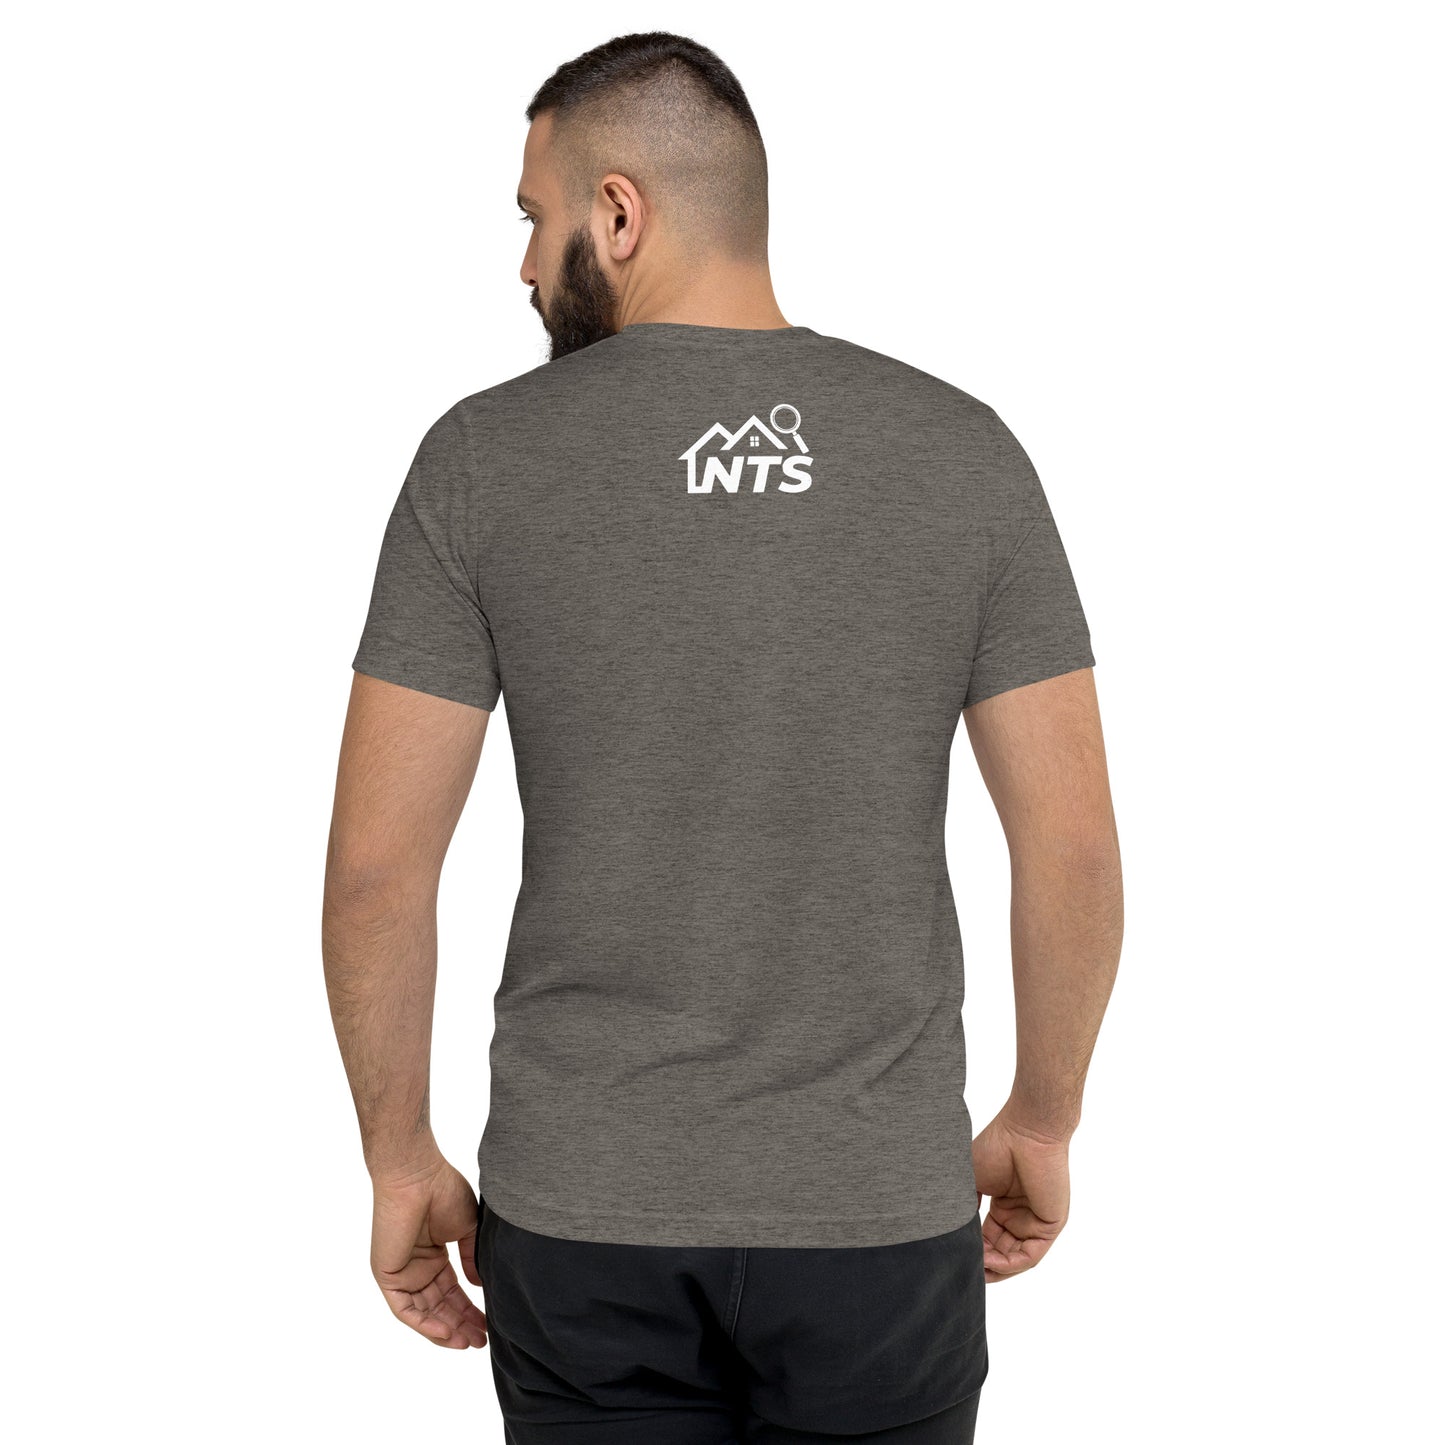 NTS Shingles Tri-Blend Shirt